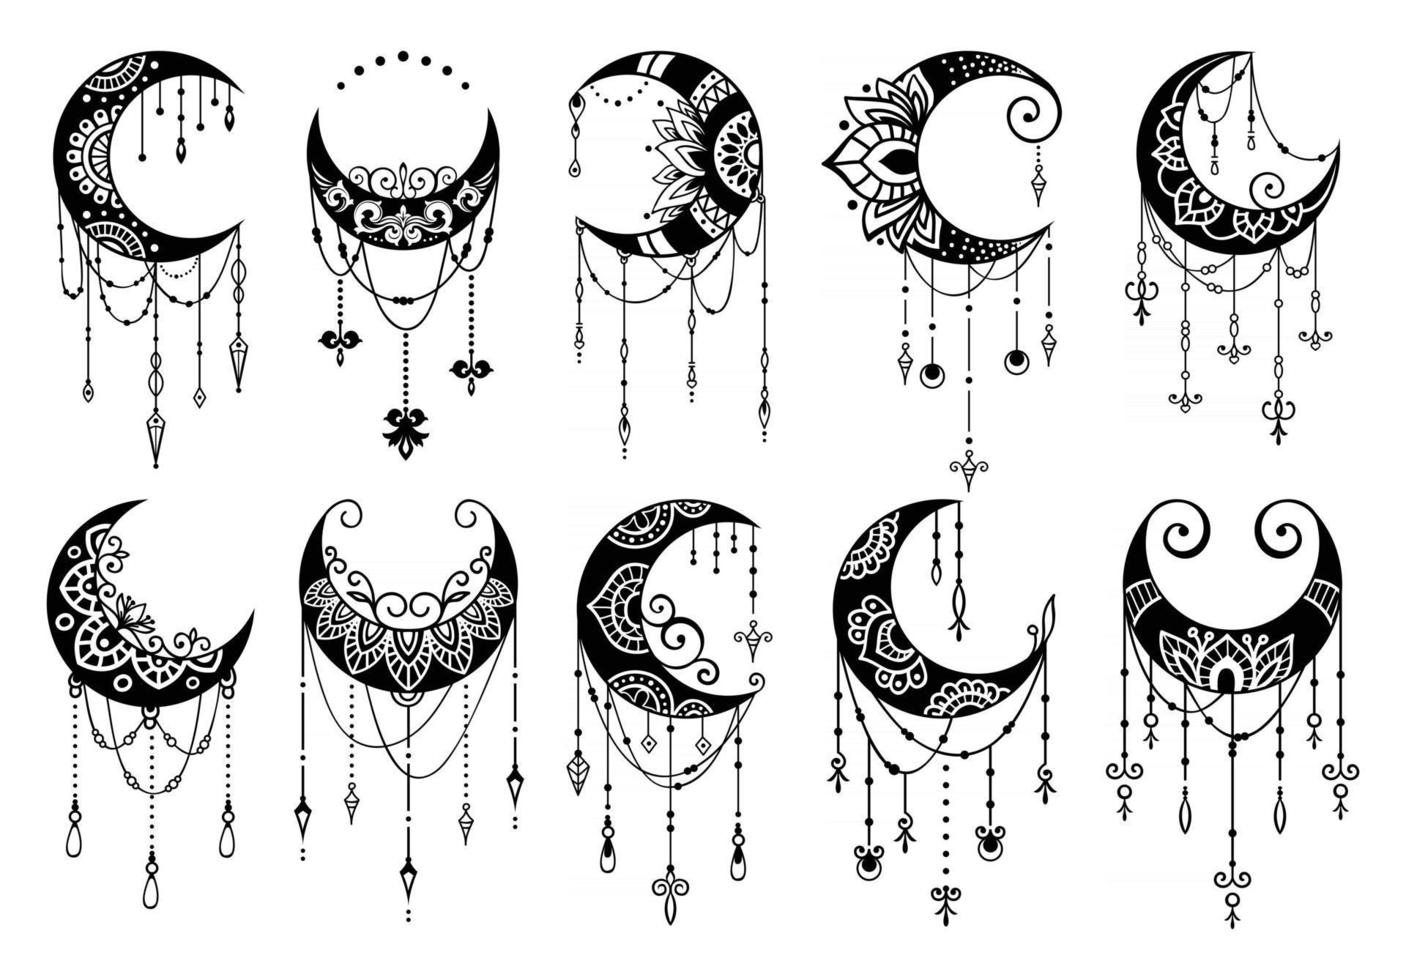 halve maan mandala-stijl, collectie maandecoratie-elementen vector